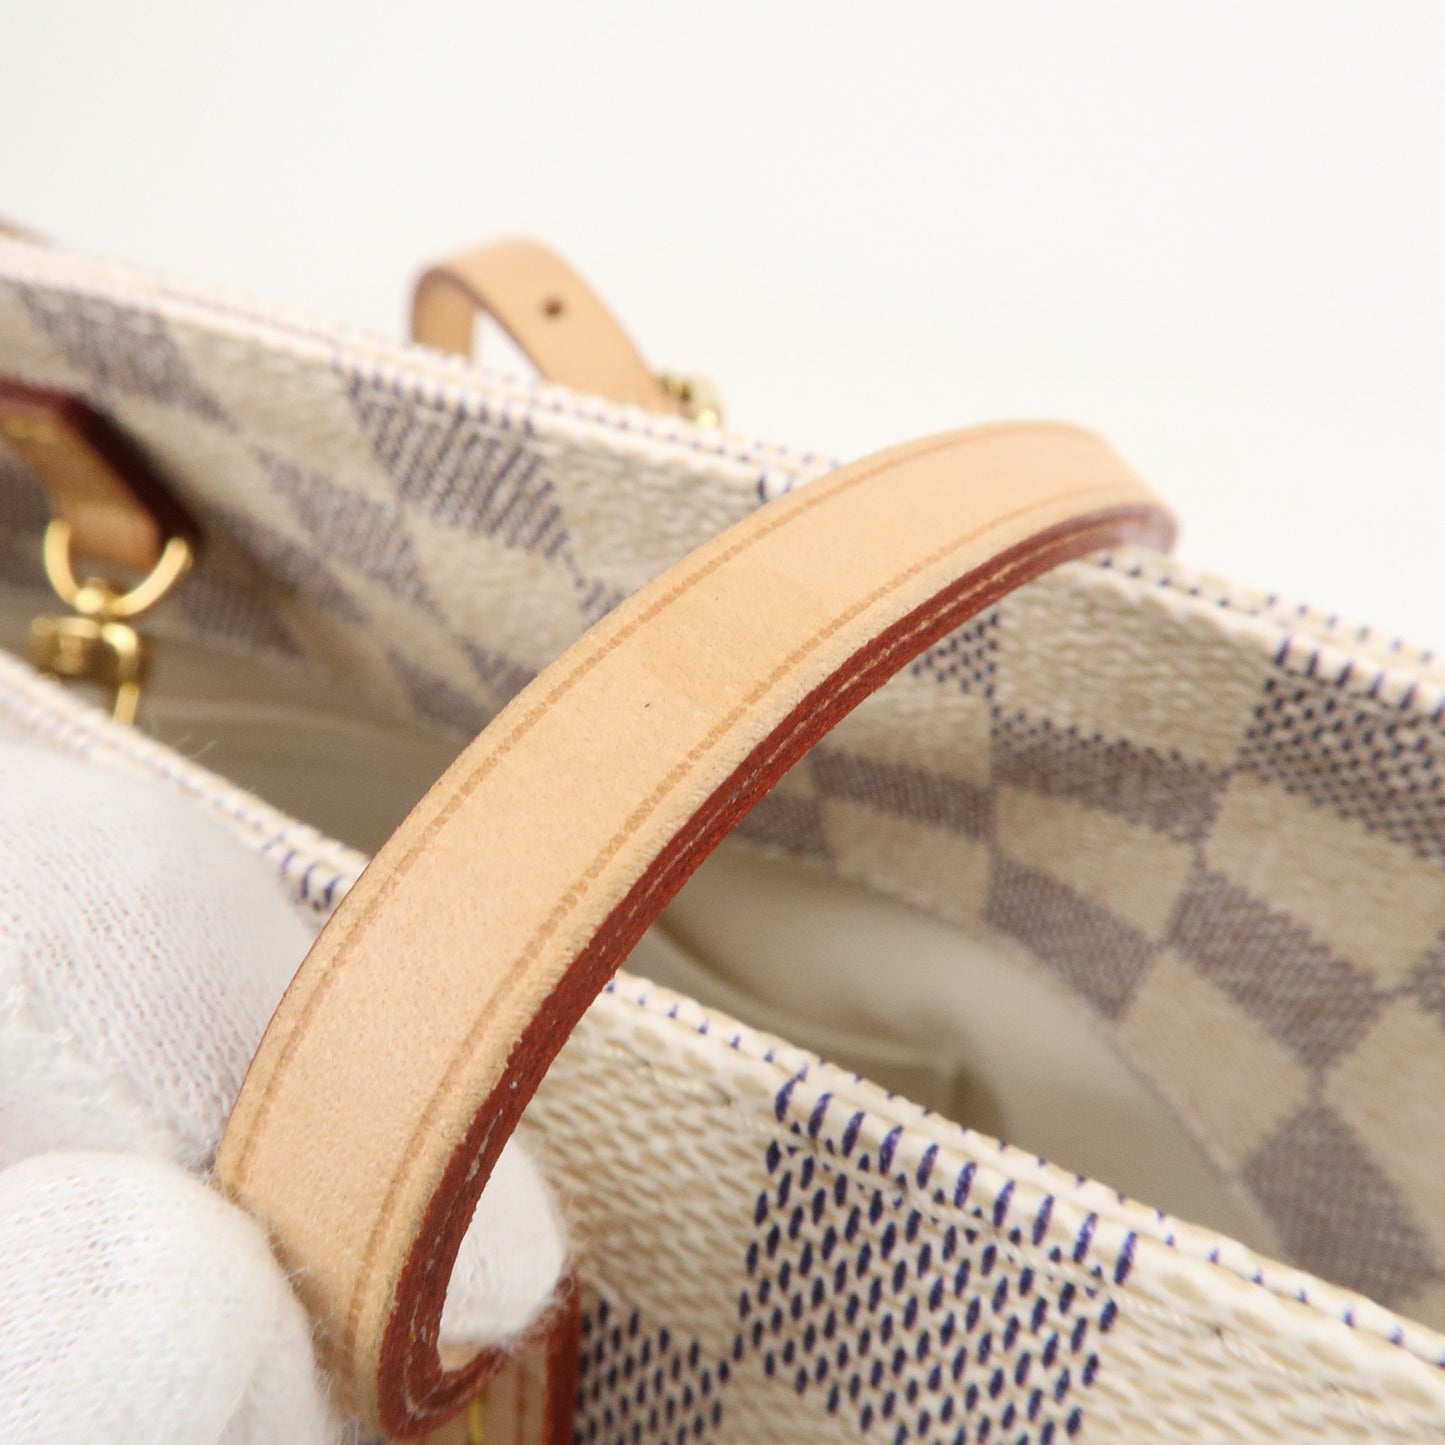 Louis-Vuitton-Damier-Azur-Cabas-PM-Tote-Bag-Shoulder-Bag-N41378